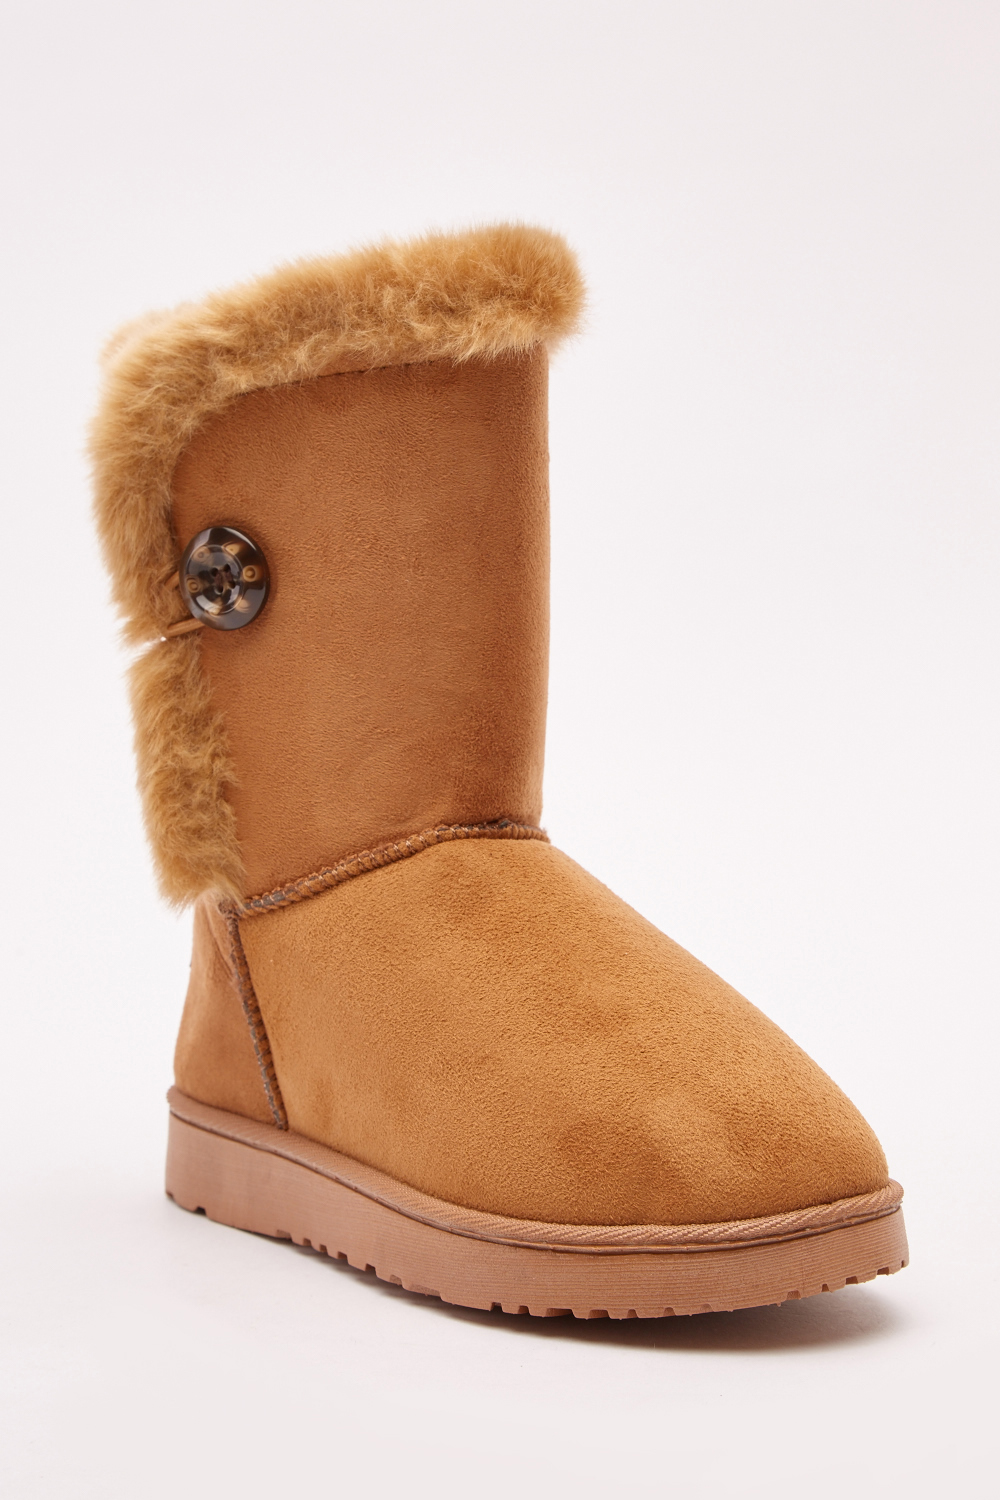 Faux Fur Suedette Winter Boots - Just $6